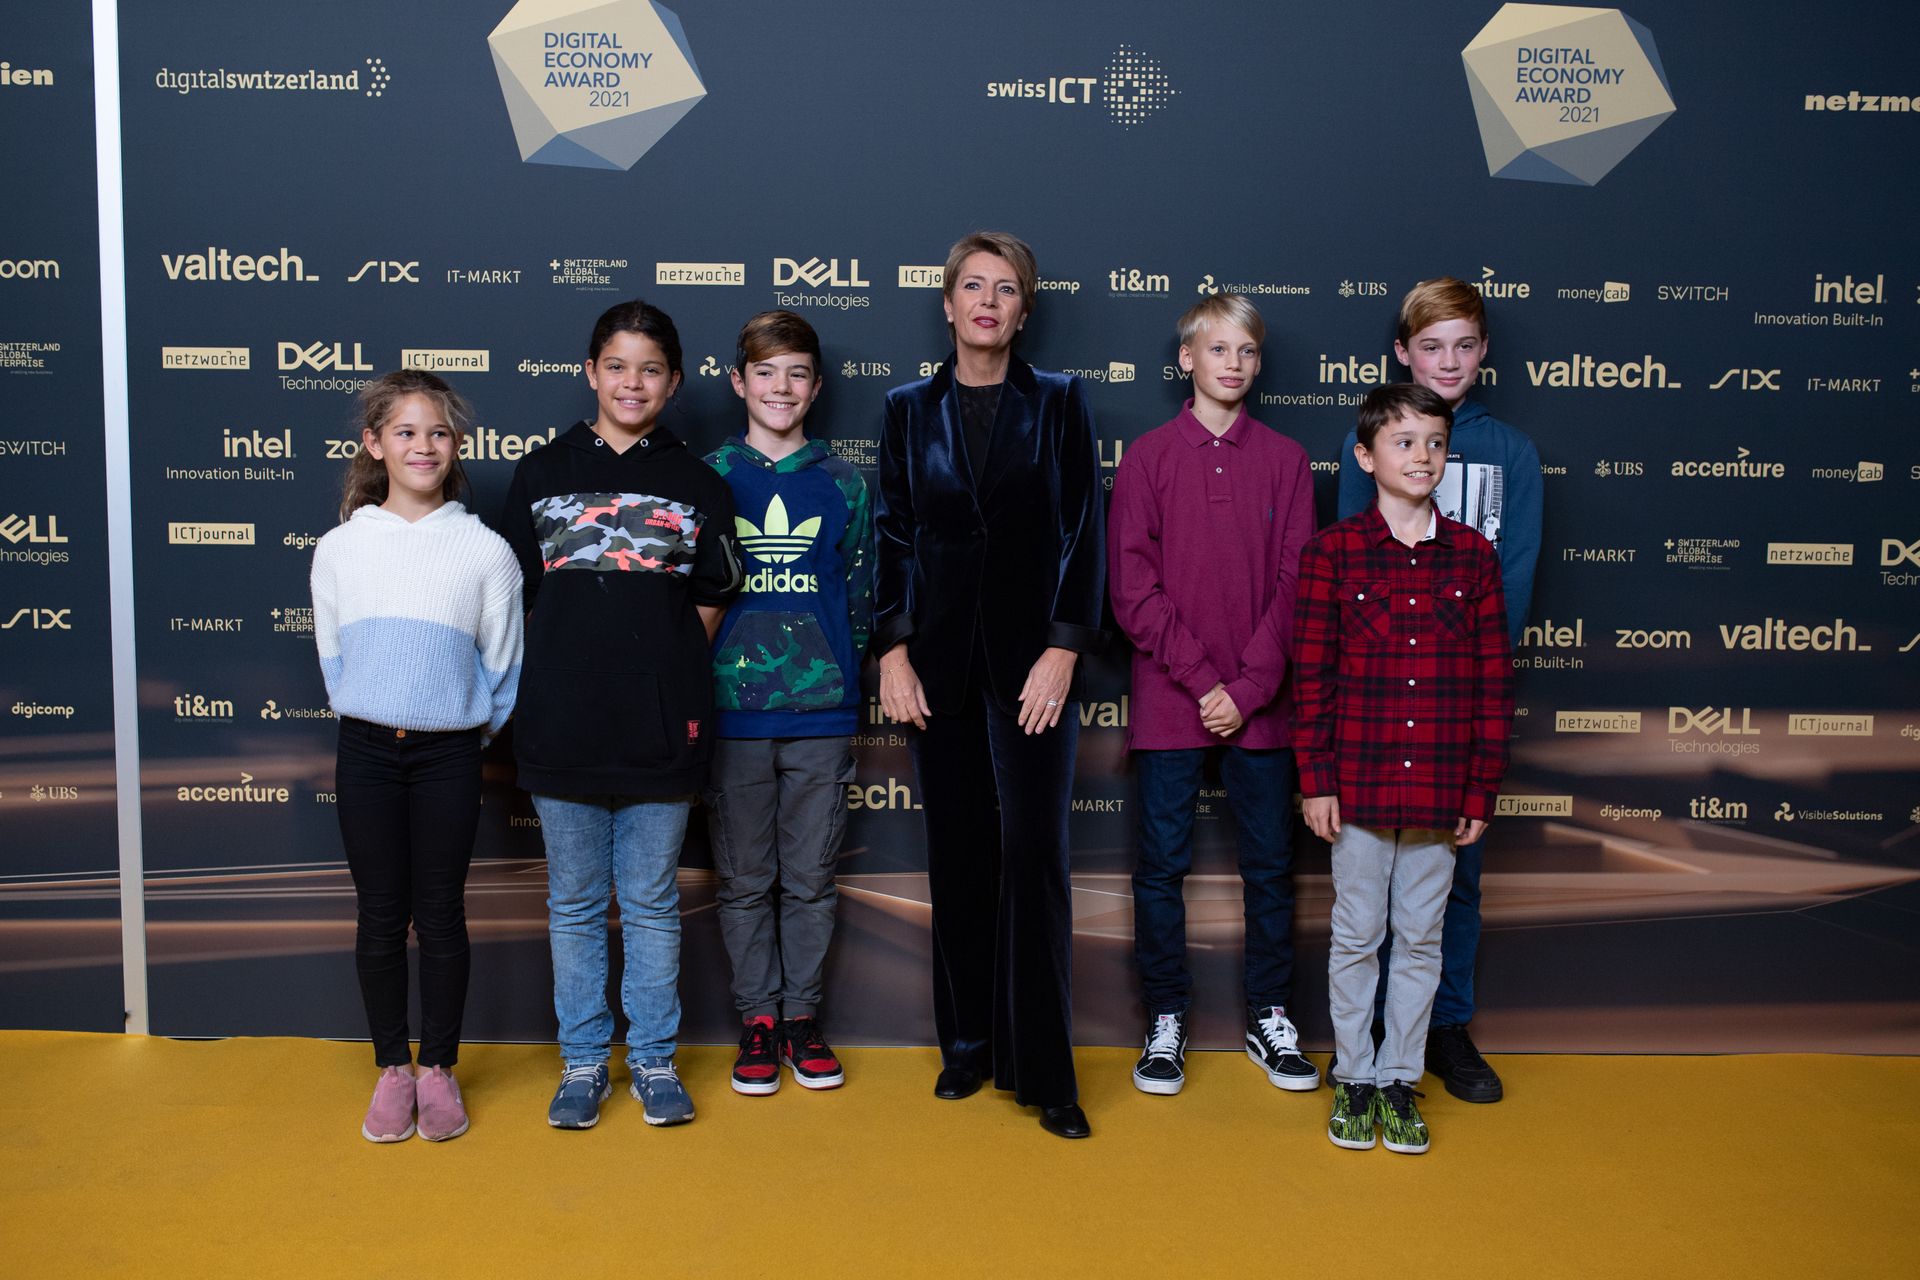 La Consigliera Federale Karin Keller-Sutter con alcuni giovanissimi alla "Giornata Digitale Svizzera" del 10 novembre 2021